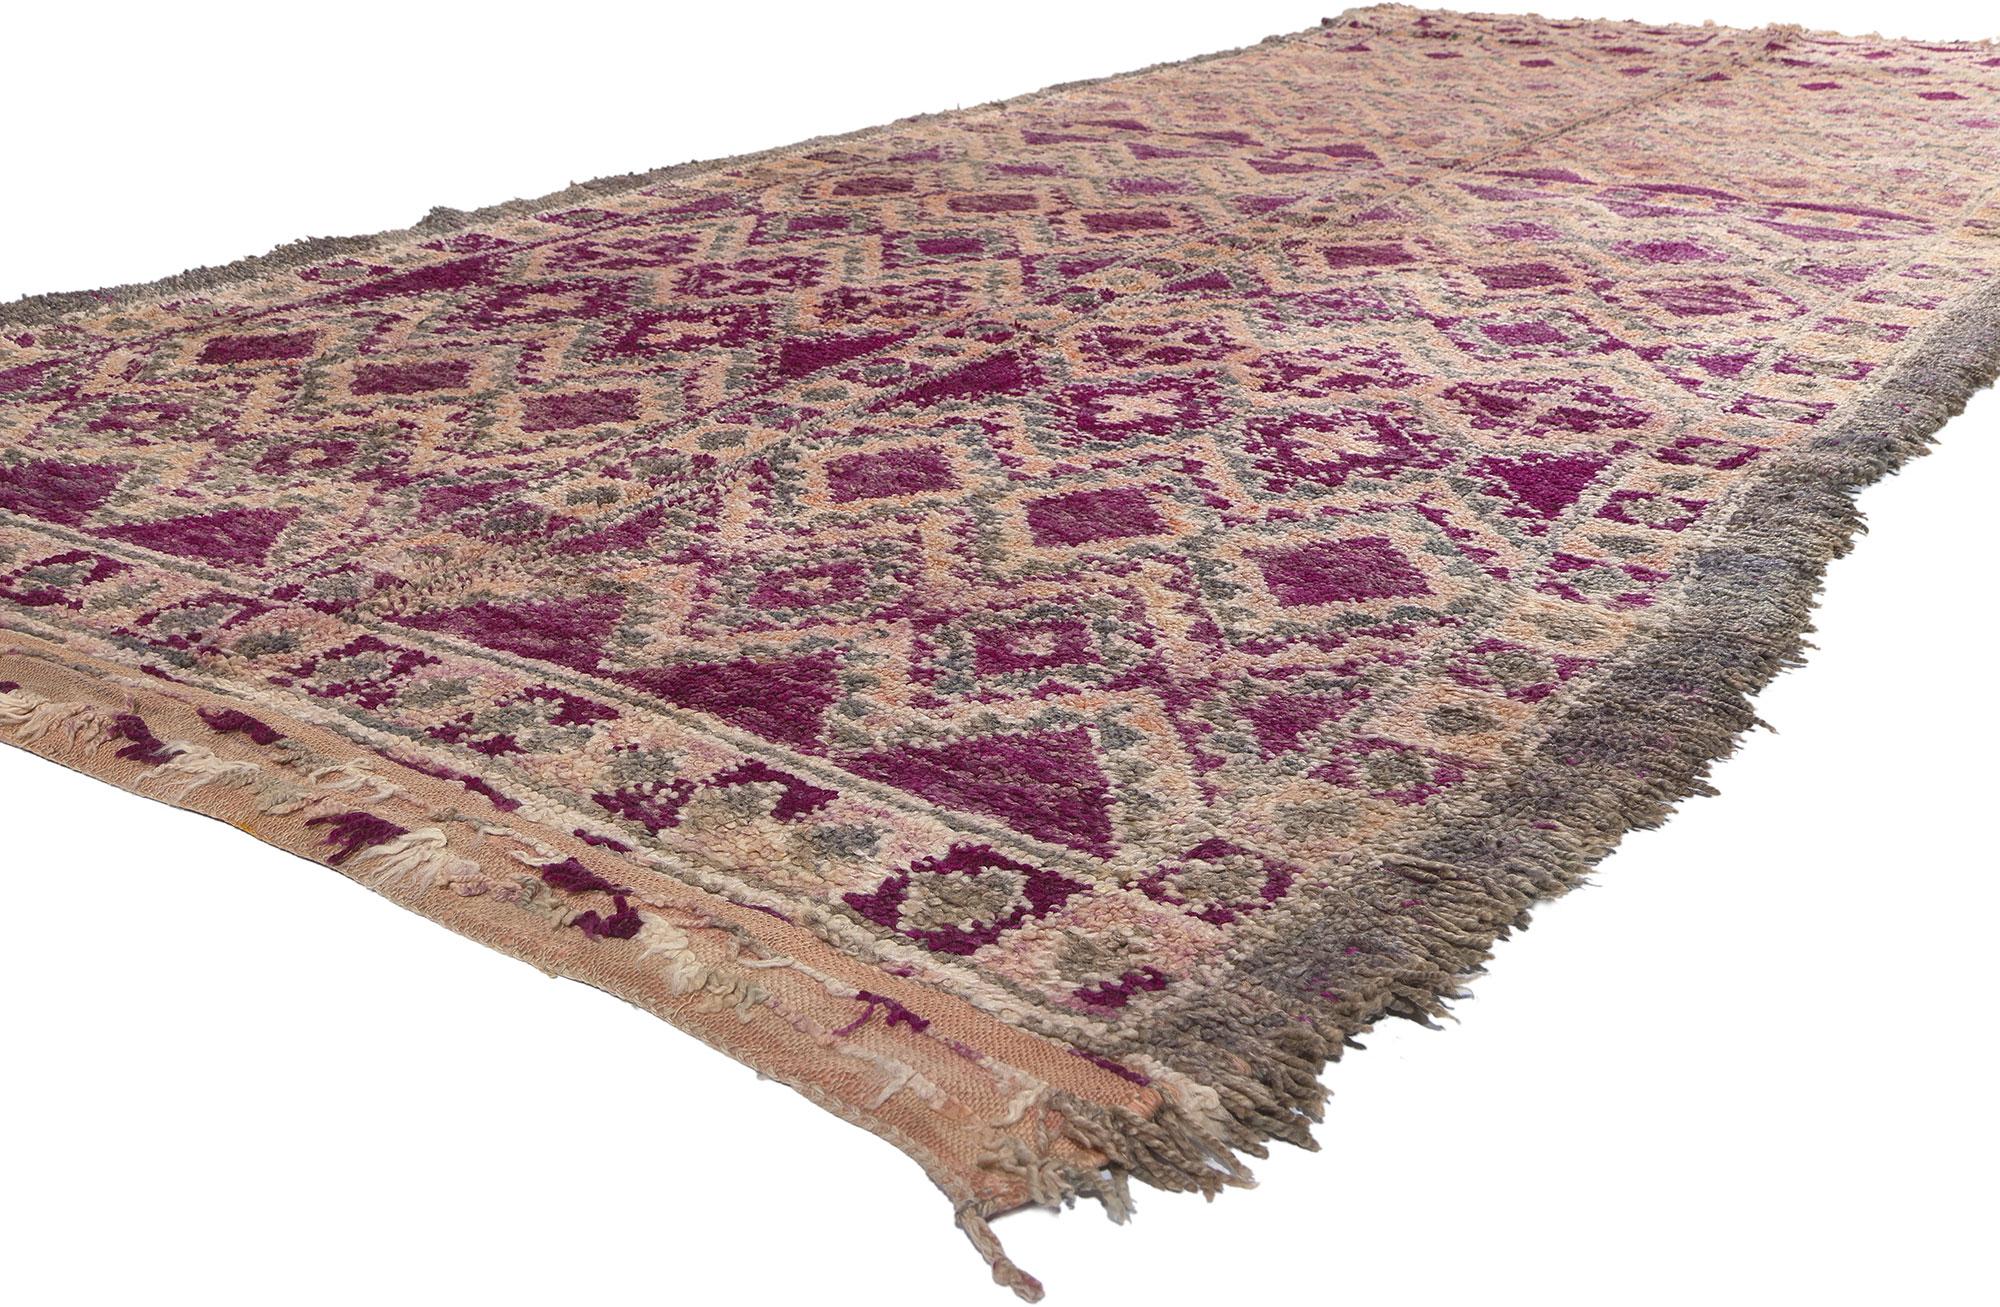 20855 Tapis marocain Beni MGuild Vintage Purple, 05'08 x 14'03. Au cœur de ce tapis Beni MGuild se trouve l'essence même de l'art marocain. Les tapis Beni MGuild, originaires des territoires tribaux du Moyen Atlas, sont réputés pour leur artisanat